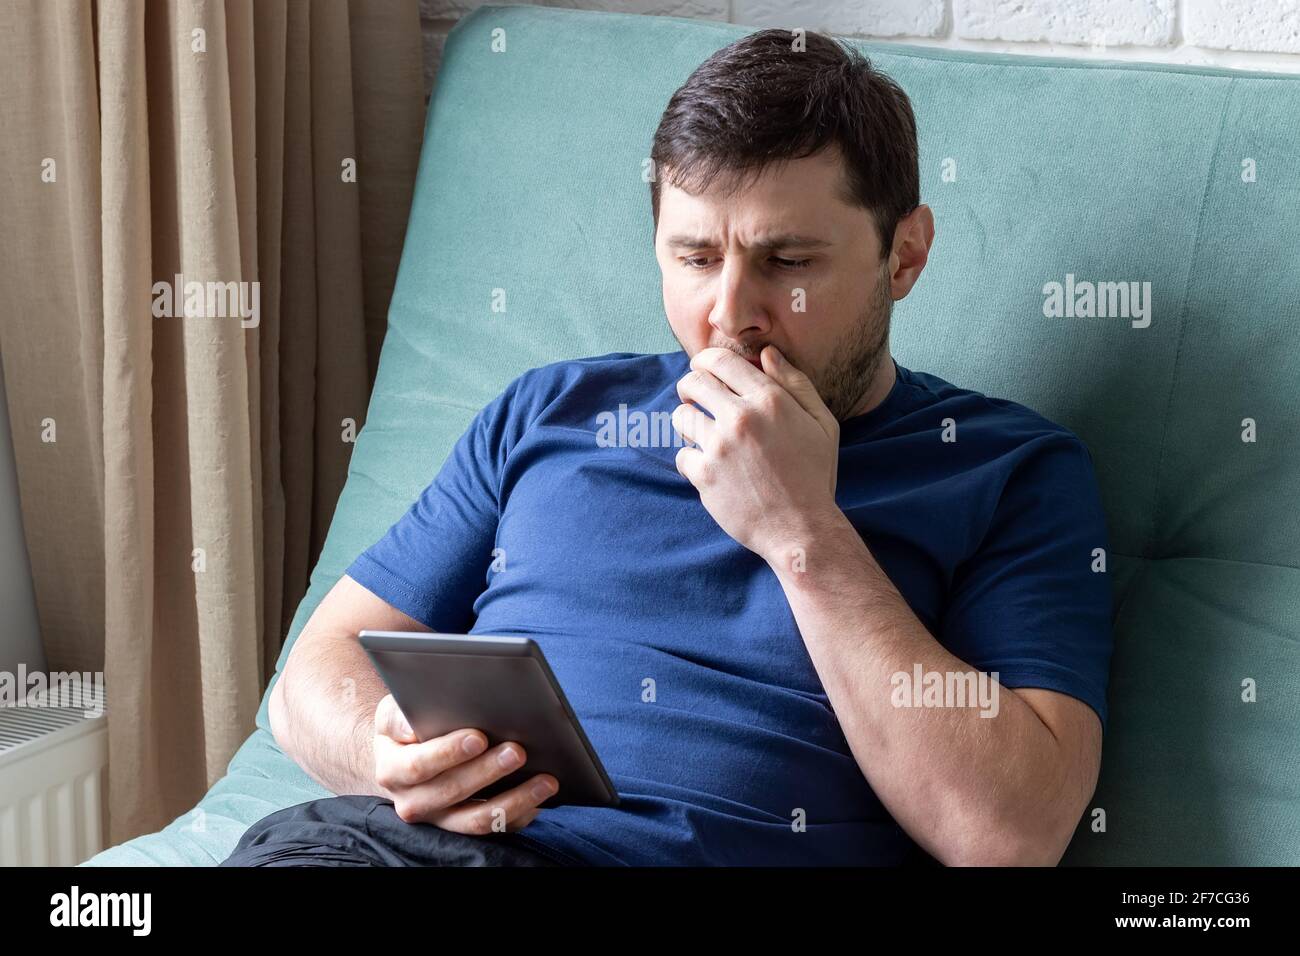 Der Mensch gähnt beim Lesen eines E-Books. Ein ruhender Mann in einem blauen T-Shirt sitzt auf einem grünen Sofa mit einem elektronischen Buch in der einen Hand, gähnt Stockfoto